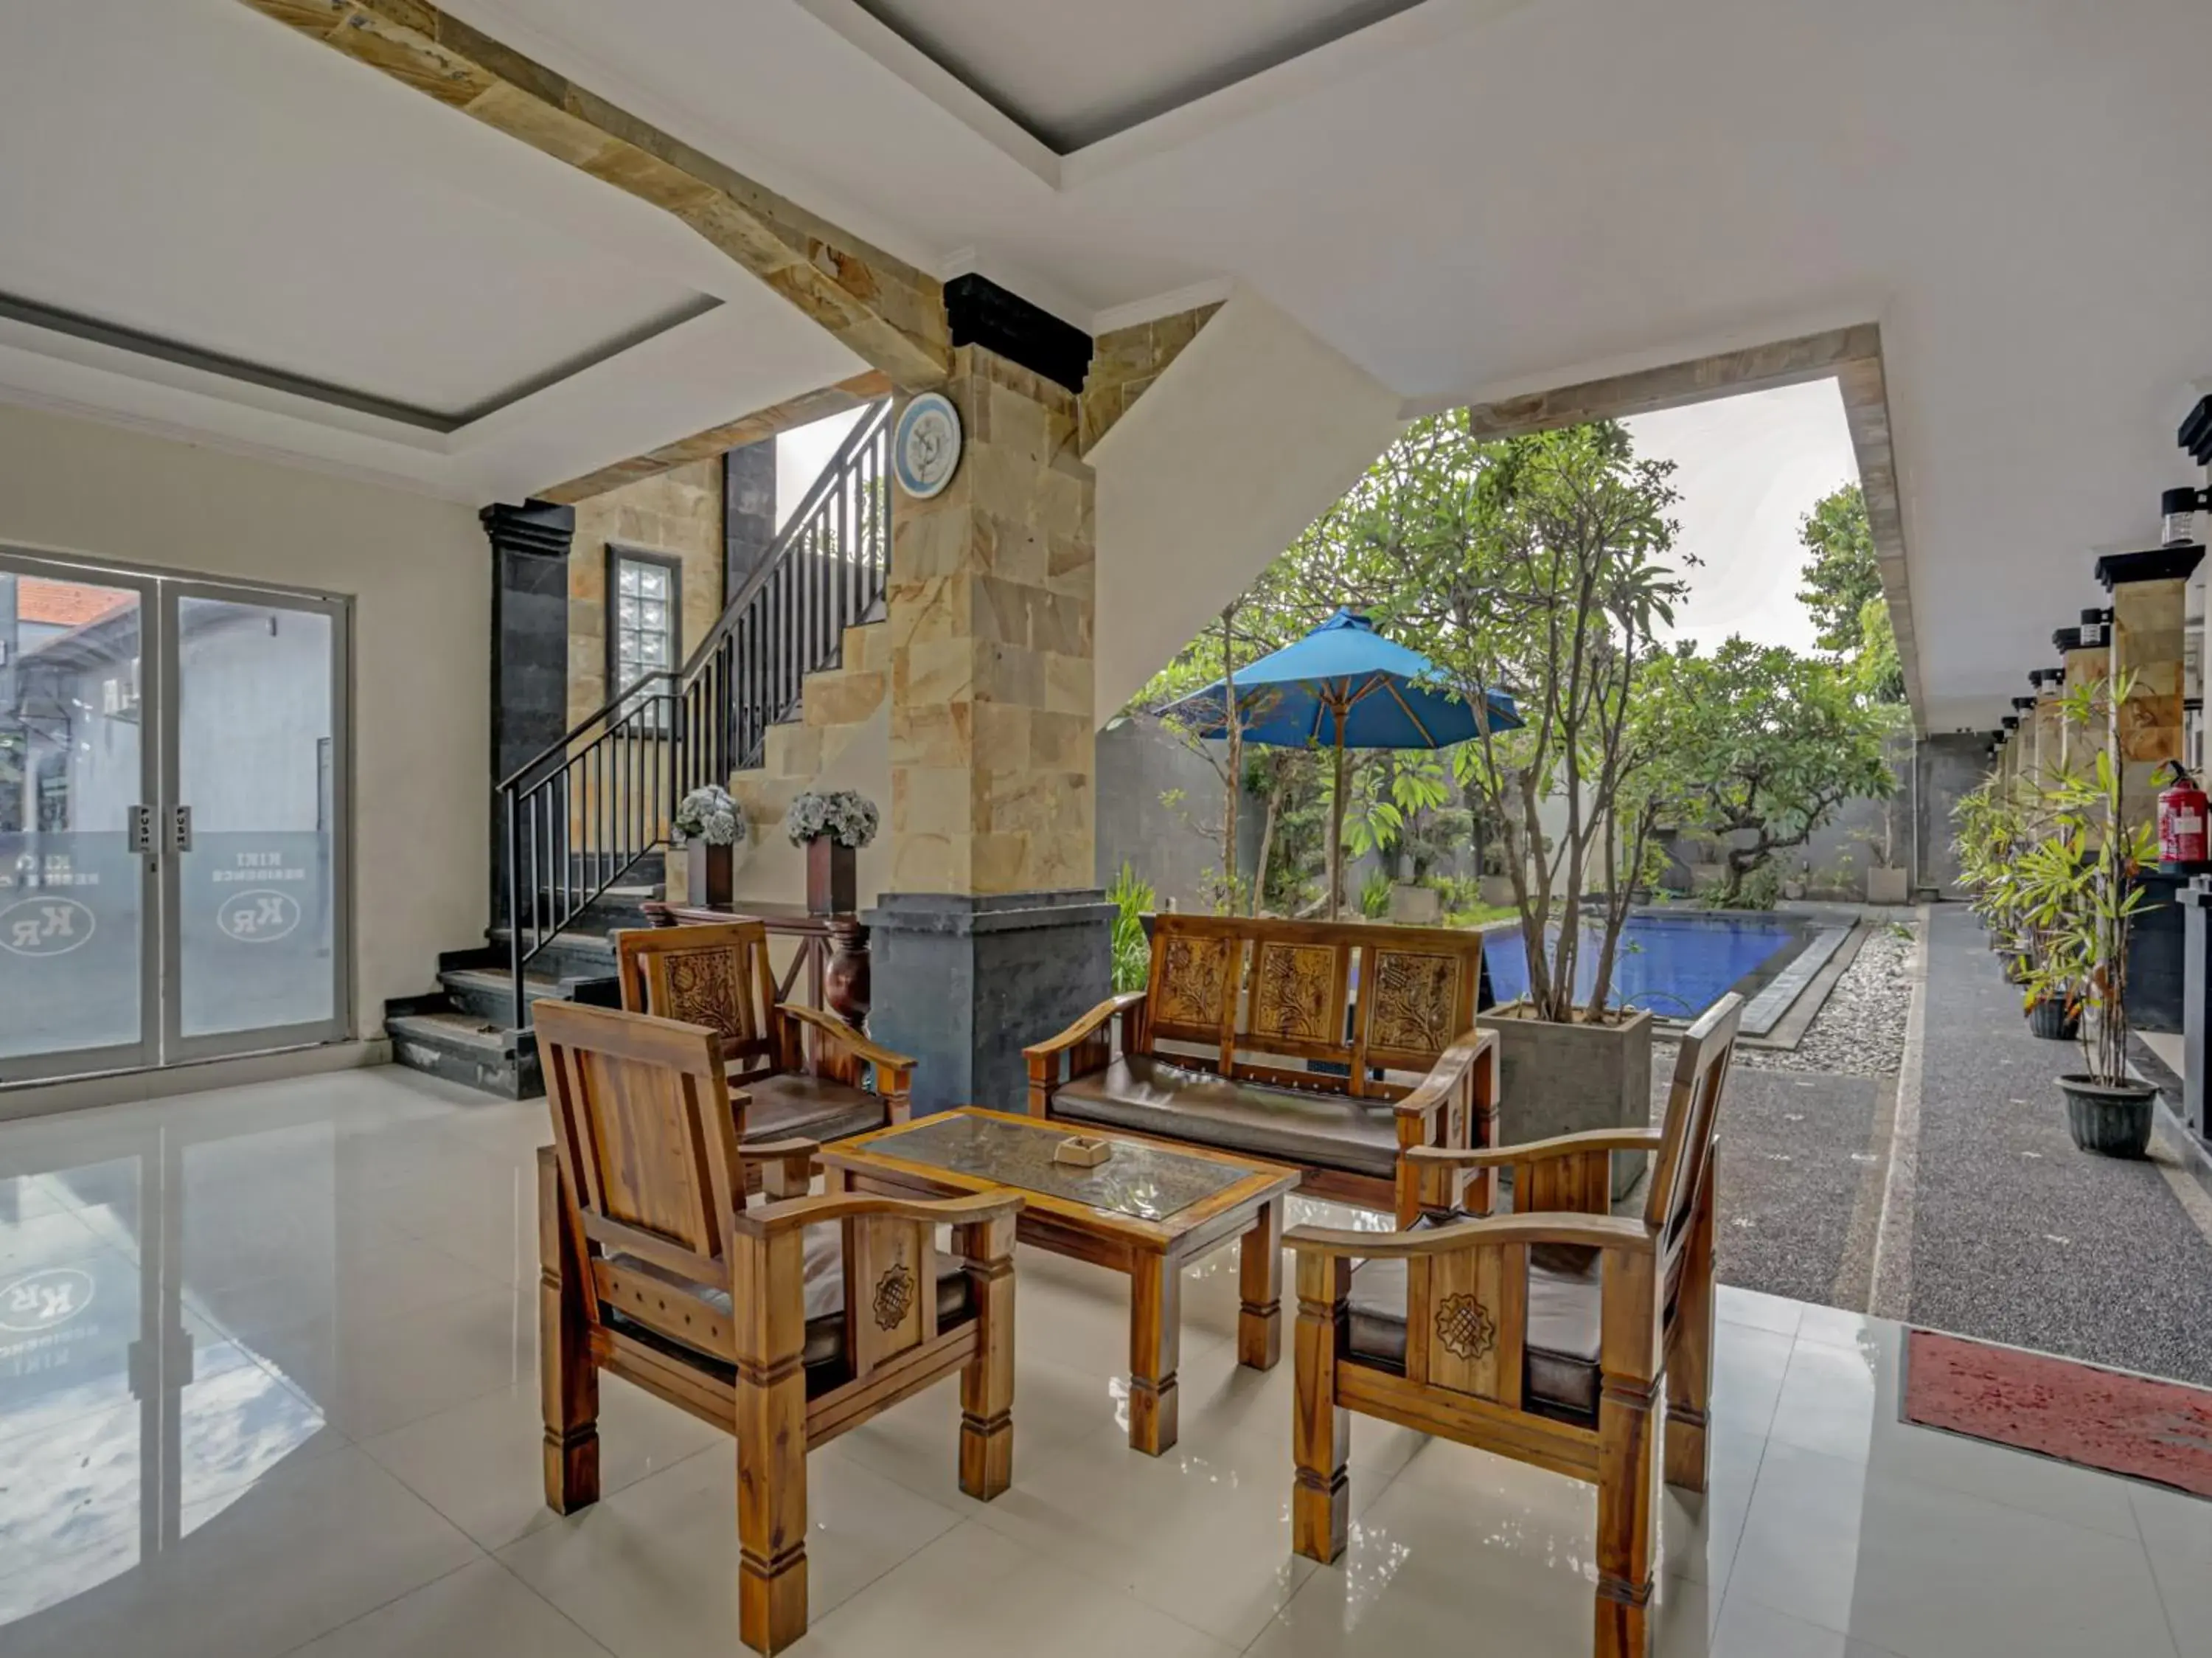 Area and facilities in OYO 3904 Kiki Residence Bali